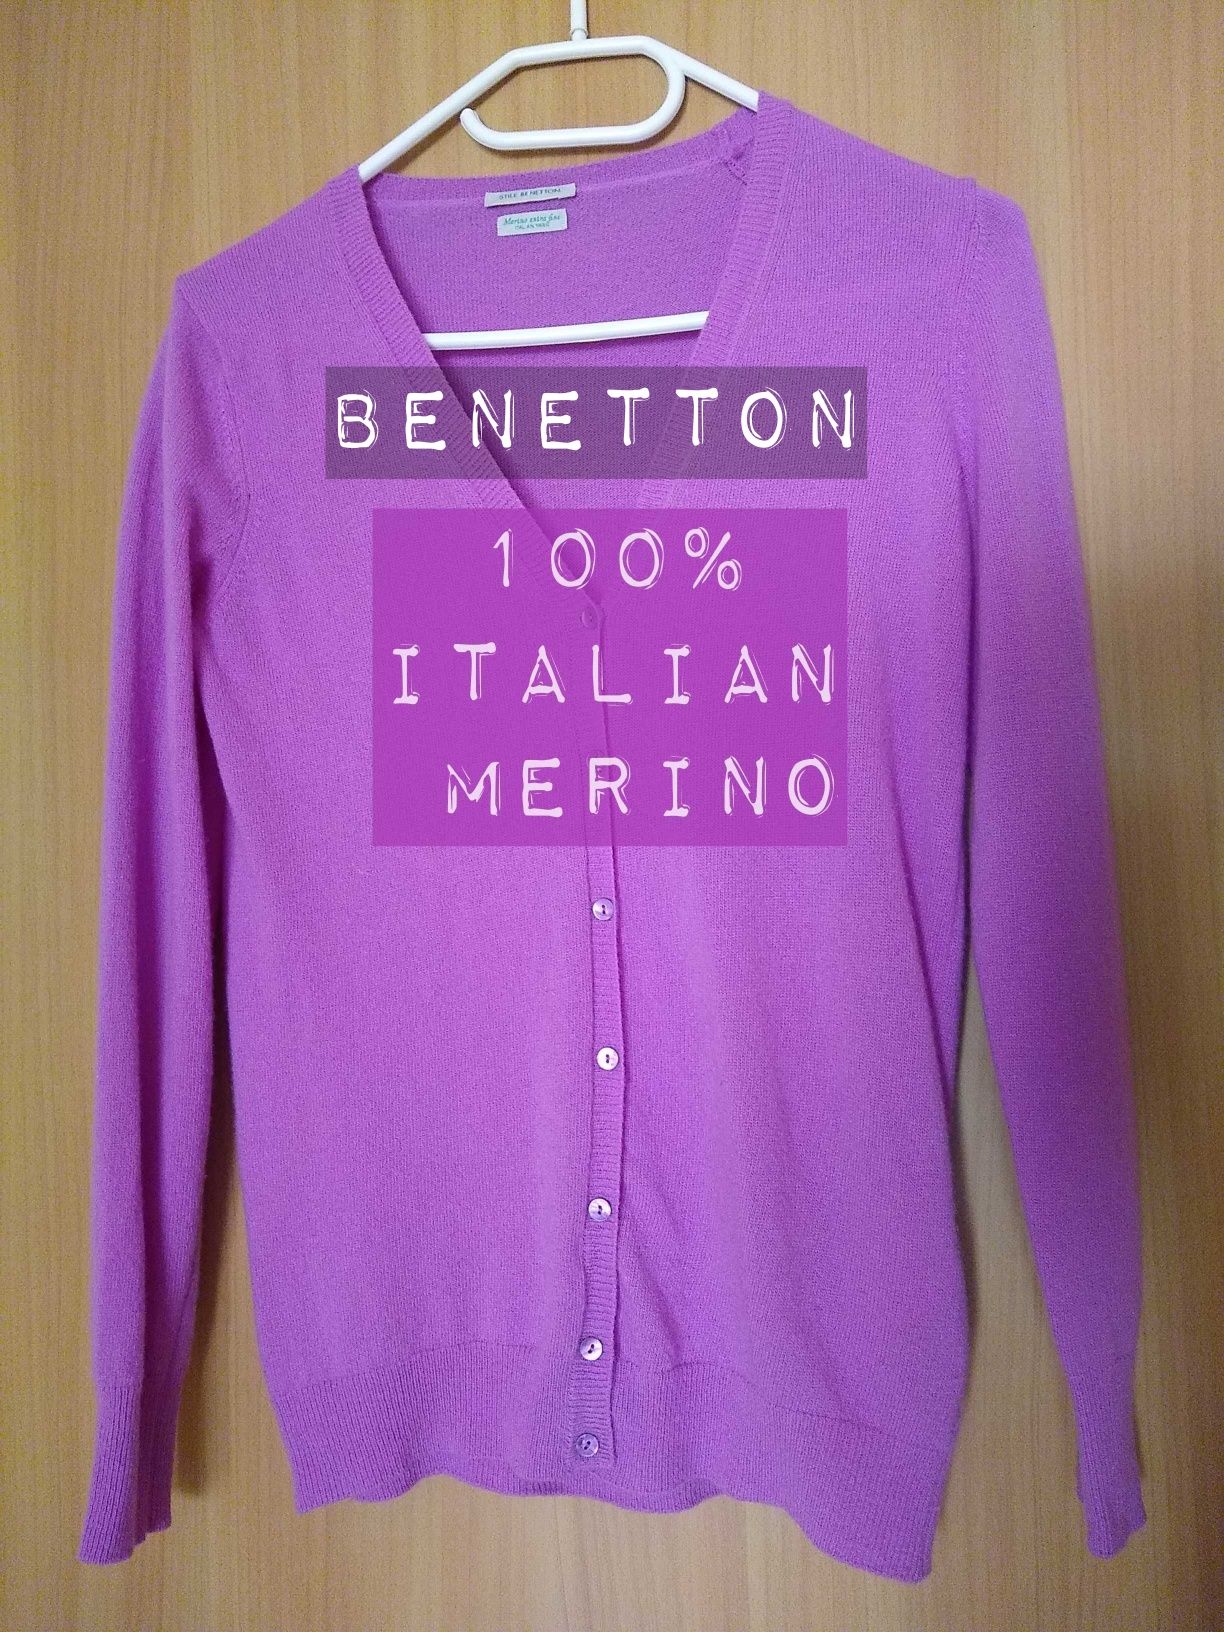 Benetton włoski sweterek z włoskiej włóczki z wełny, 100% Merino